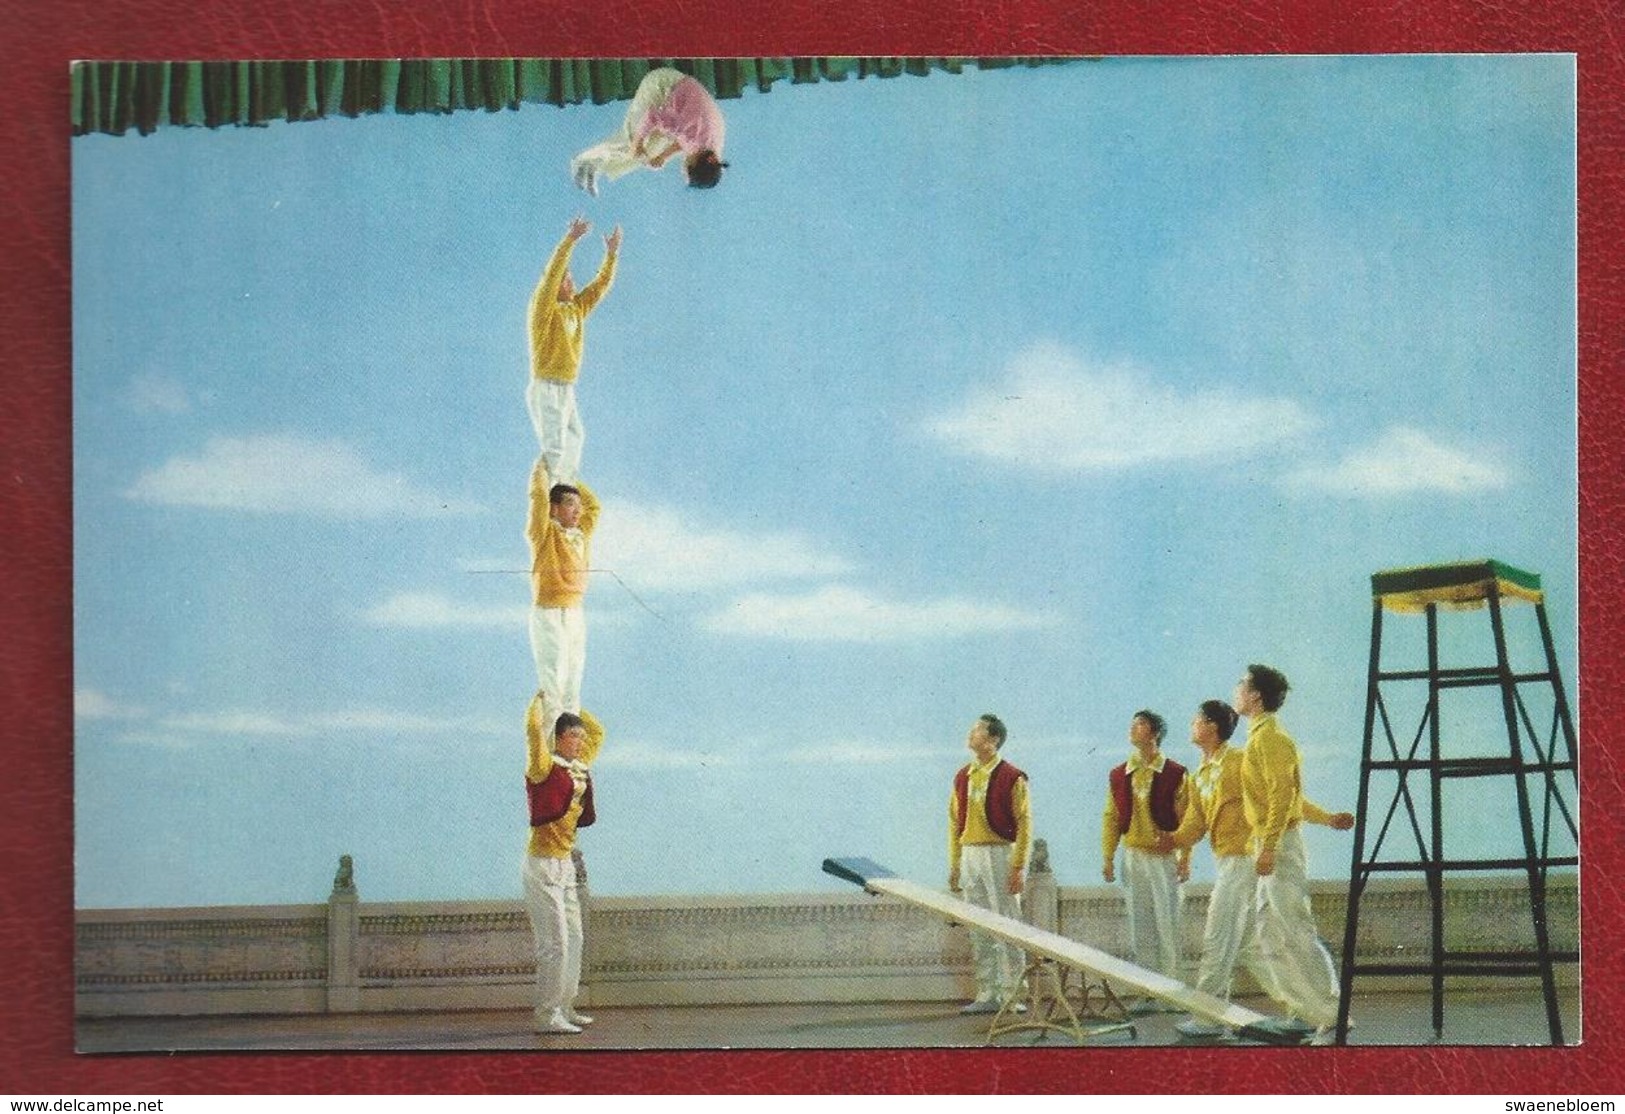 CN.- CHINA.CIRCUS.12 Kaarten met omslag. 12 Cards with Envelope. Chinese Artiesten, acrobaten.